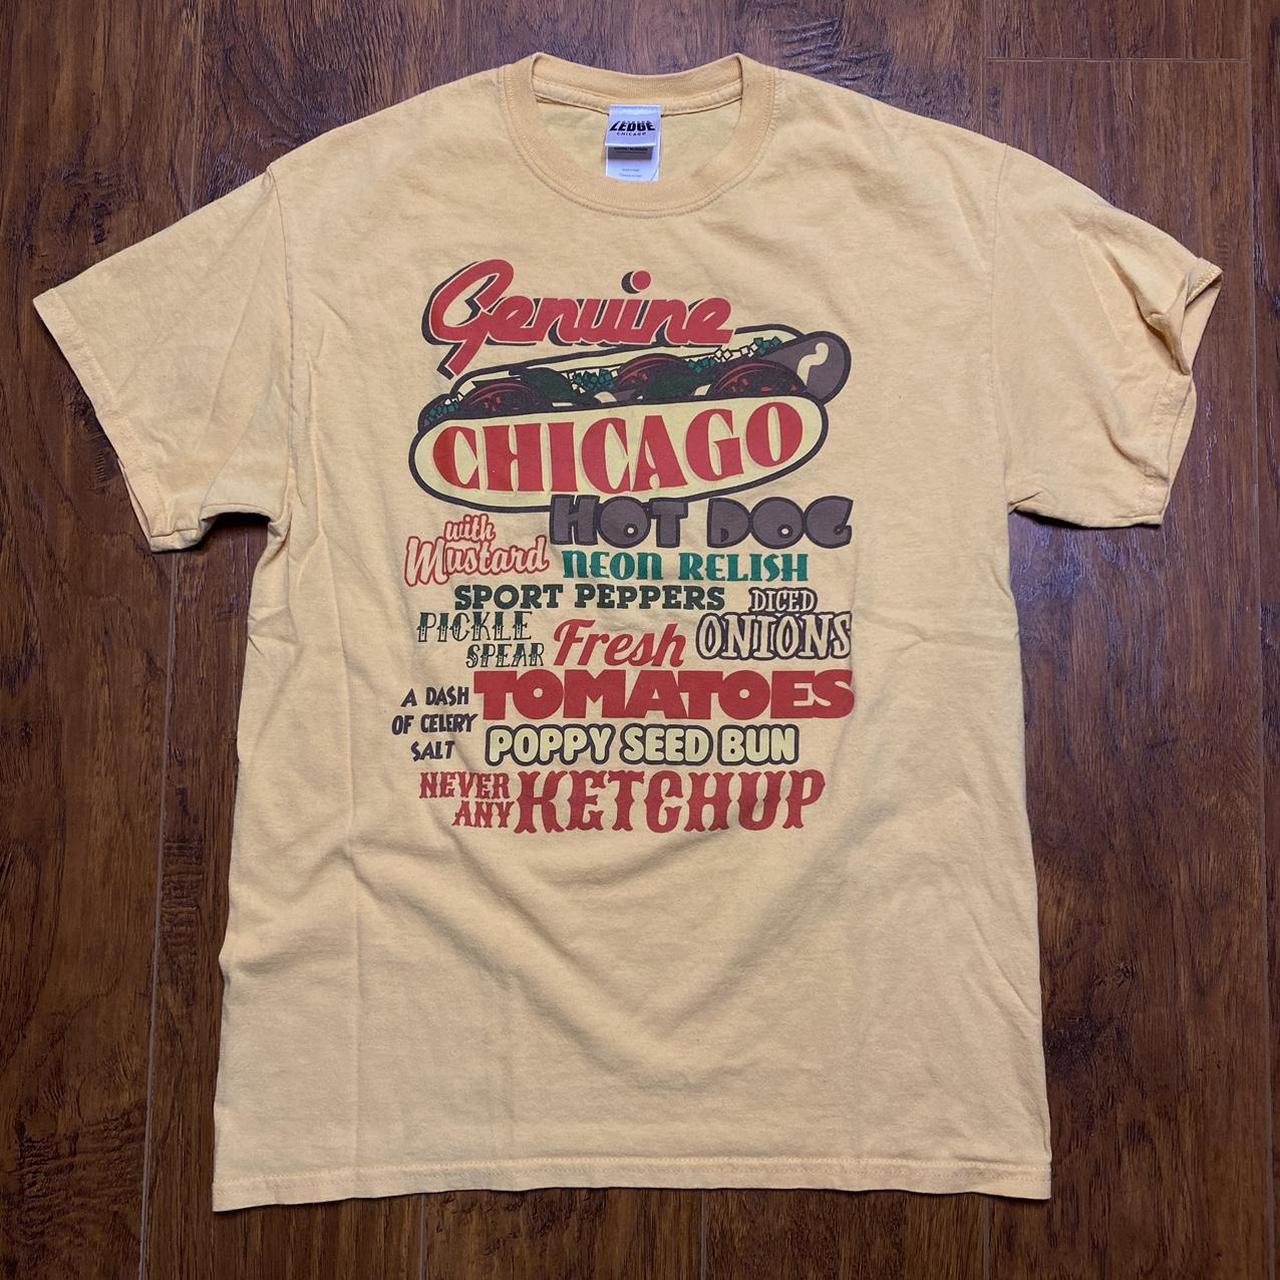 genuine Chicago Hot Dog' t-shirt 🌭 yum yum - Depop